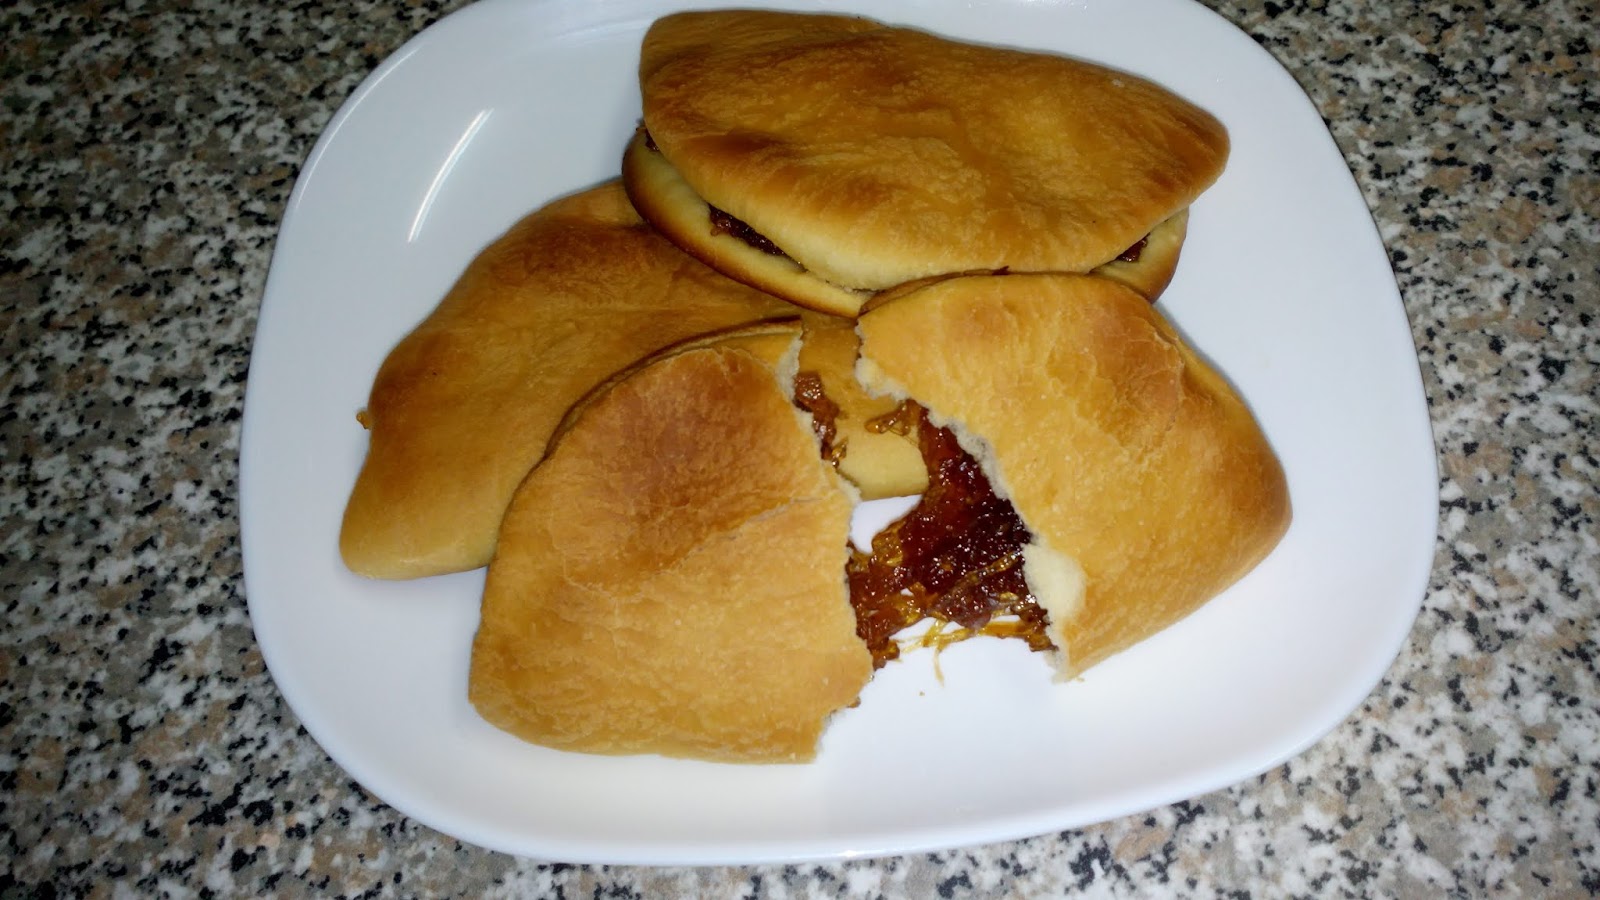 DELIKASERO: Empanadas con dulce de lacayote